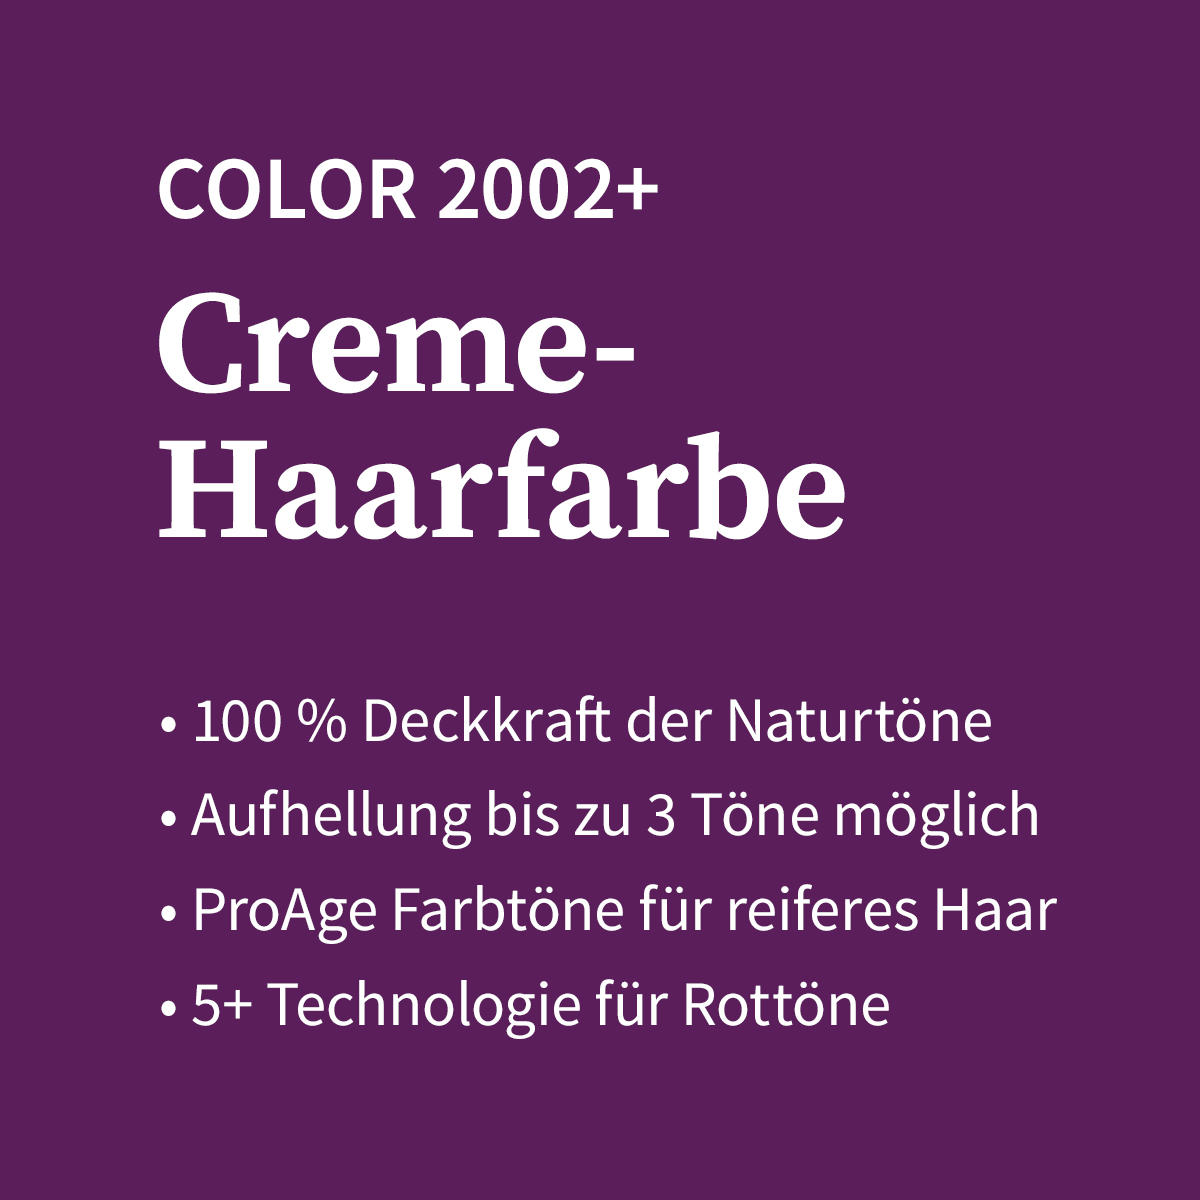 Basler Color 2002+ Cremehaarfarbe 4/0 mittelbraun, Tube 60 ml - 4